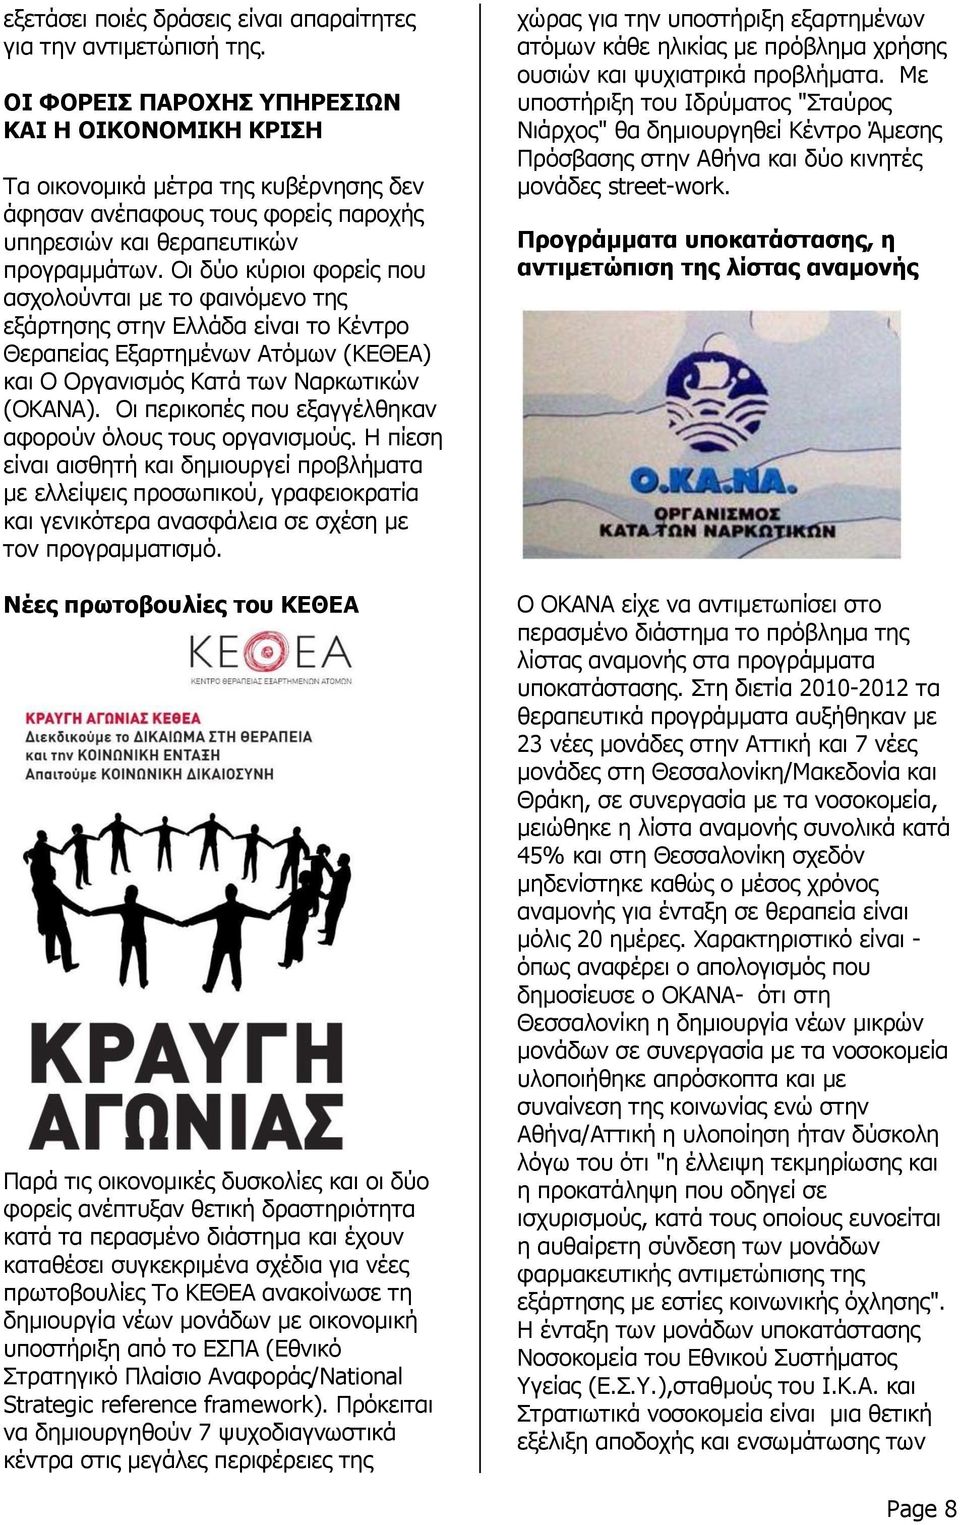 Οι δύο κύριοι φορείς που ασχολούνται με το φαινόμενο της εξάρτησης στην Ελλάδα είναι το Κέντρο Θεραπείας Εξαρτημένων Ατόμων (ΚΕΘΕΑ) και Ο Οργανισμός Κατά των Ναρκωτικών (ΟΚΑΝΑ).